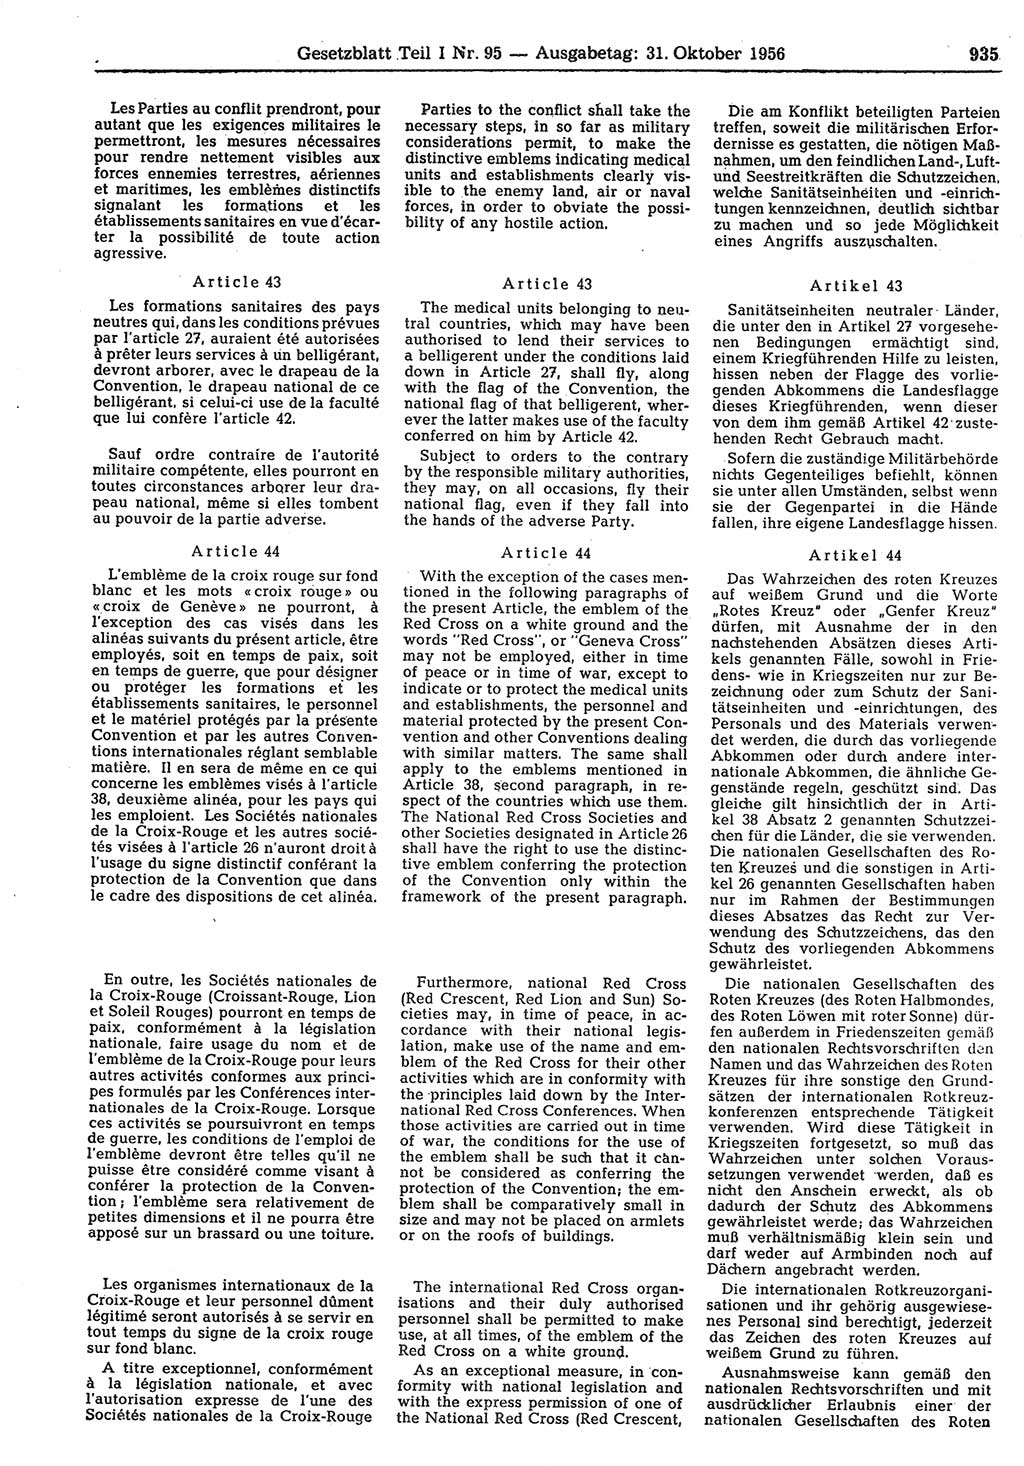 Gesetzblatt (GBl.) der Deutschen Demokratischen Republik (DDR) Teil Ⅰ 1956, Seite 935 (GBl. DDR Ⅰ 1956, S. 935)